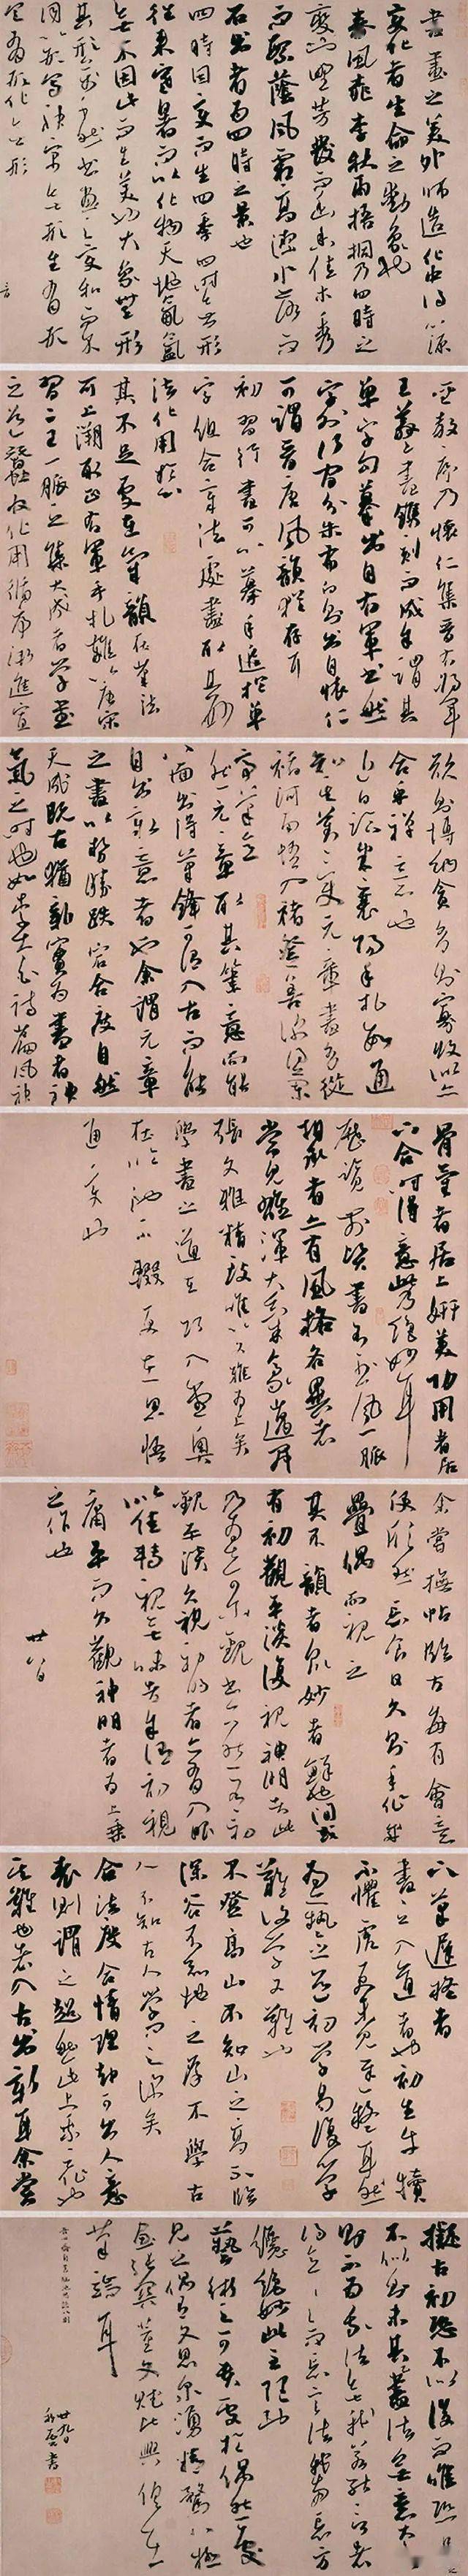 85后青年杨科云获兰亭奖技法确实高超但对书法的理解很低级